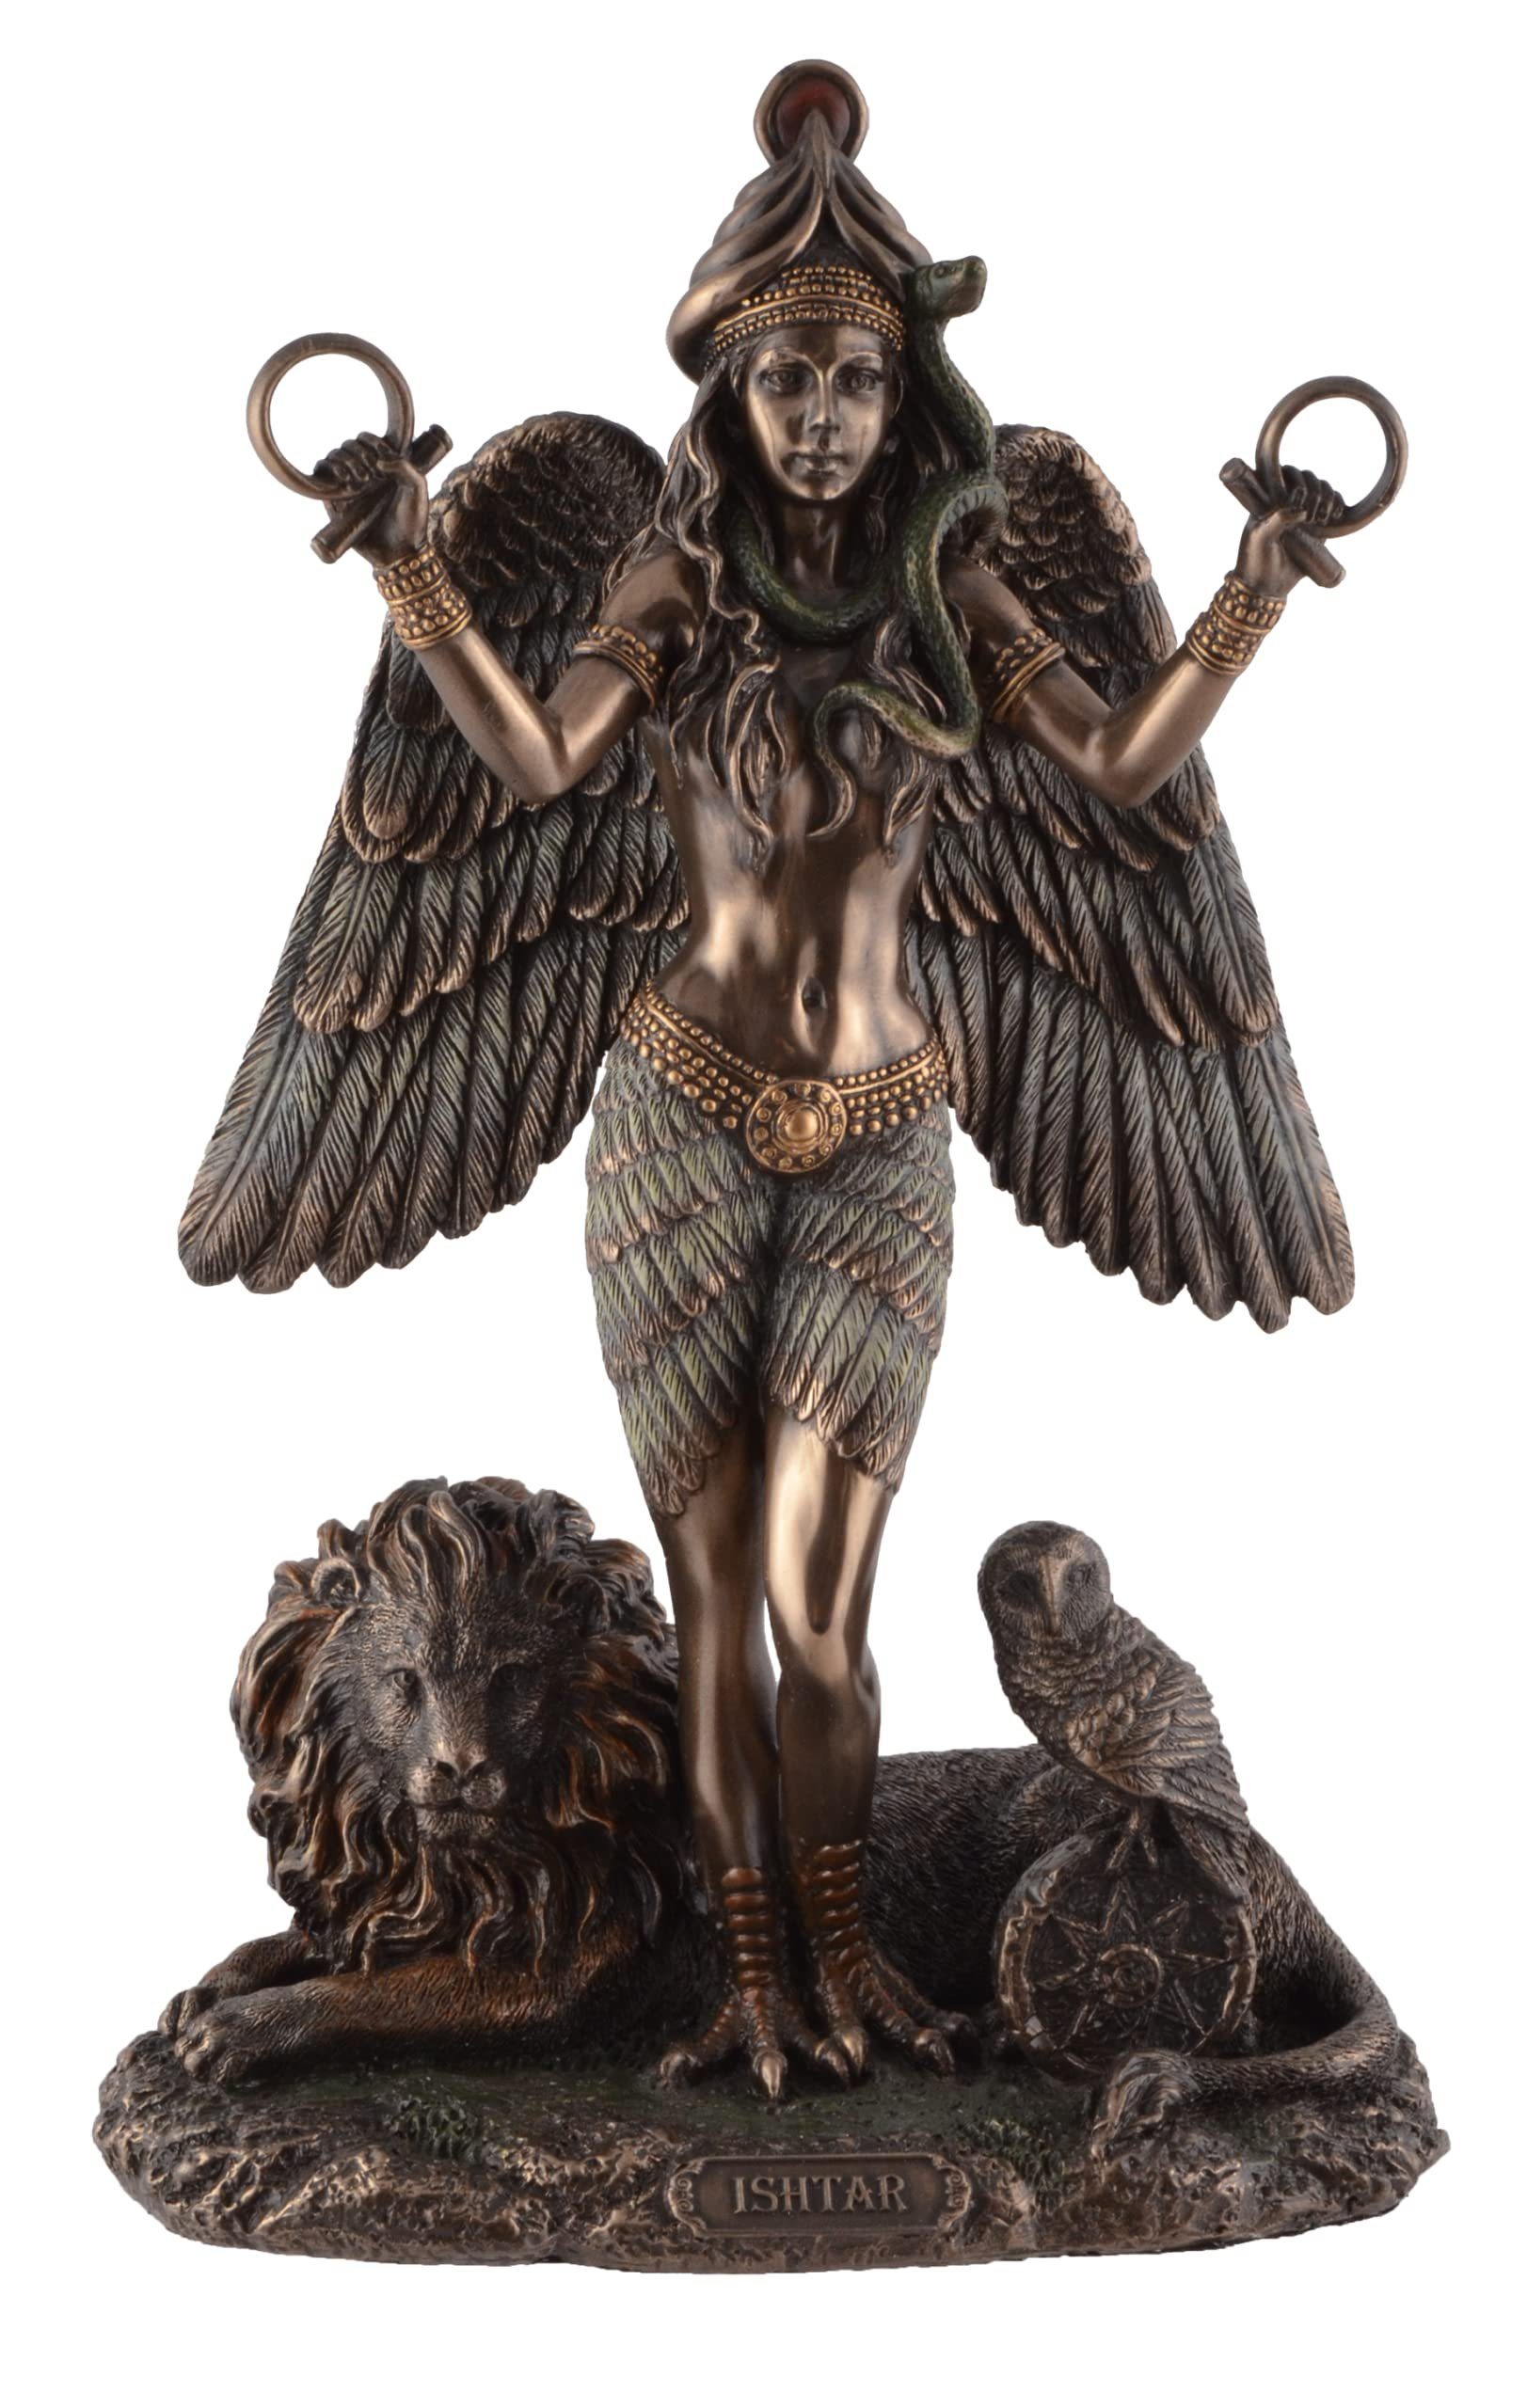 Vogler direct Gmbh Dekofigur Ishtar Mesopotamische Göttin der Liebe und Macht by Veronese, von Hand bronziert und coloriert, LxBxH: ca. 15x9x22cm